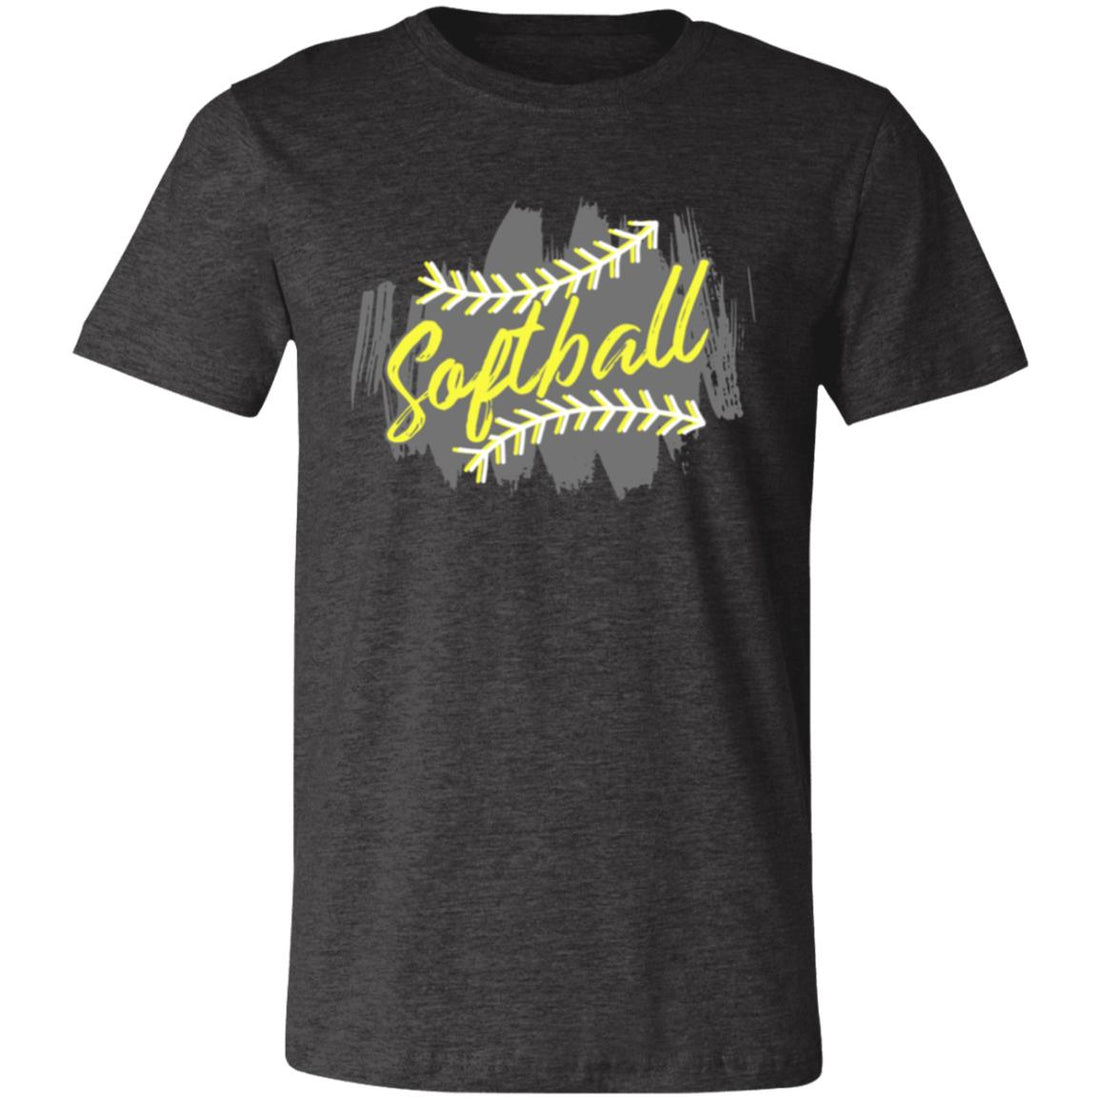 Softball Splash Short-Sleeve T-Shirt - T-Shirts - Positively Sassy - Softball Splash Short-Sleeve T-Shirt